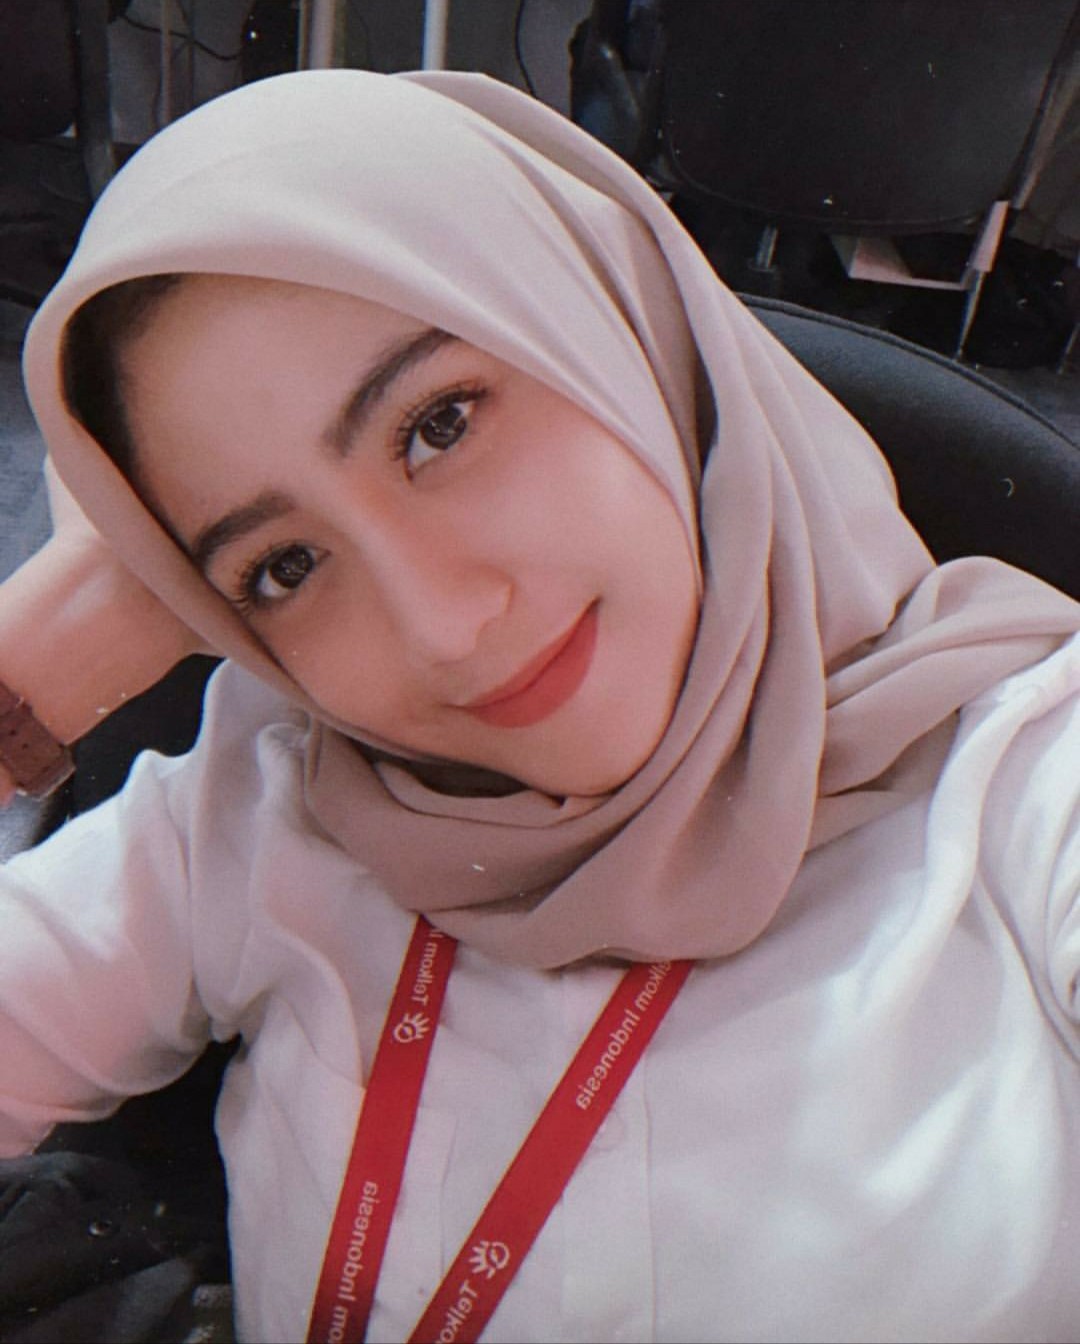 Fannyhad - Gadis Akhwat Muslimah Bandung 26 tahun Mencari Kekasih/Calon suami Perjaka atau Duda (bersedia poligami) - SatukanCinta